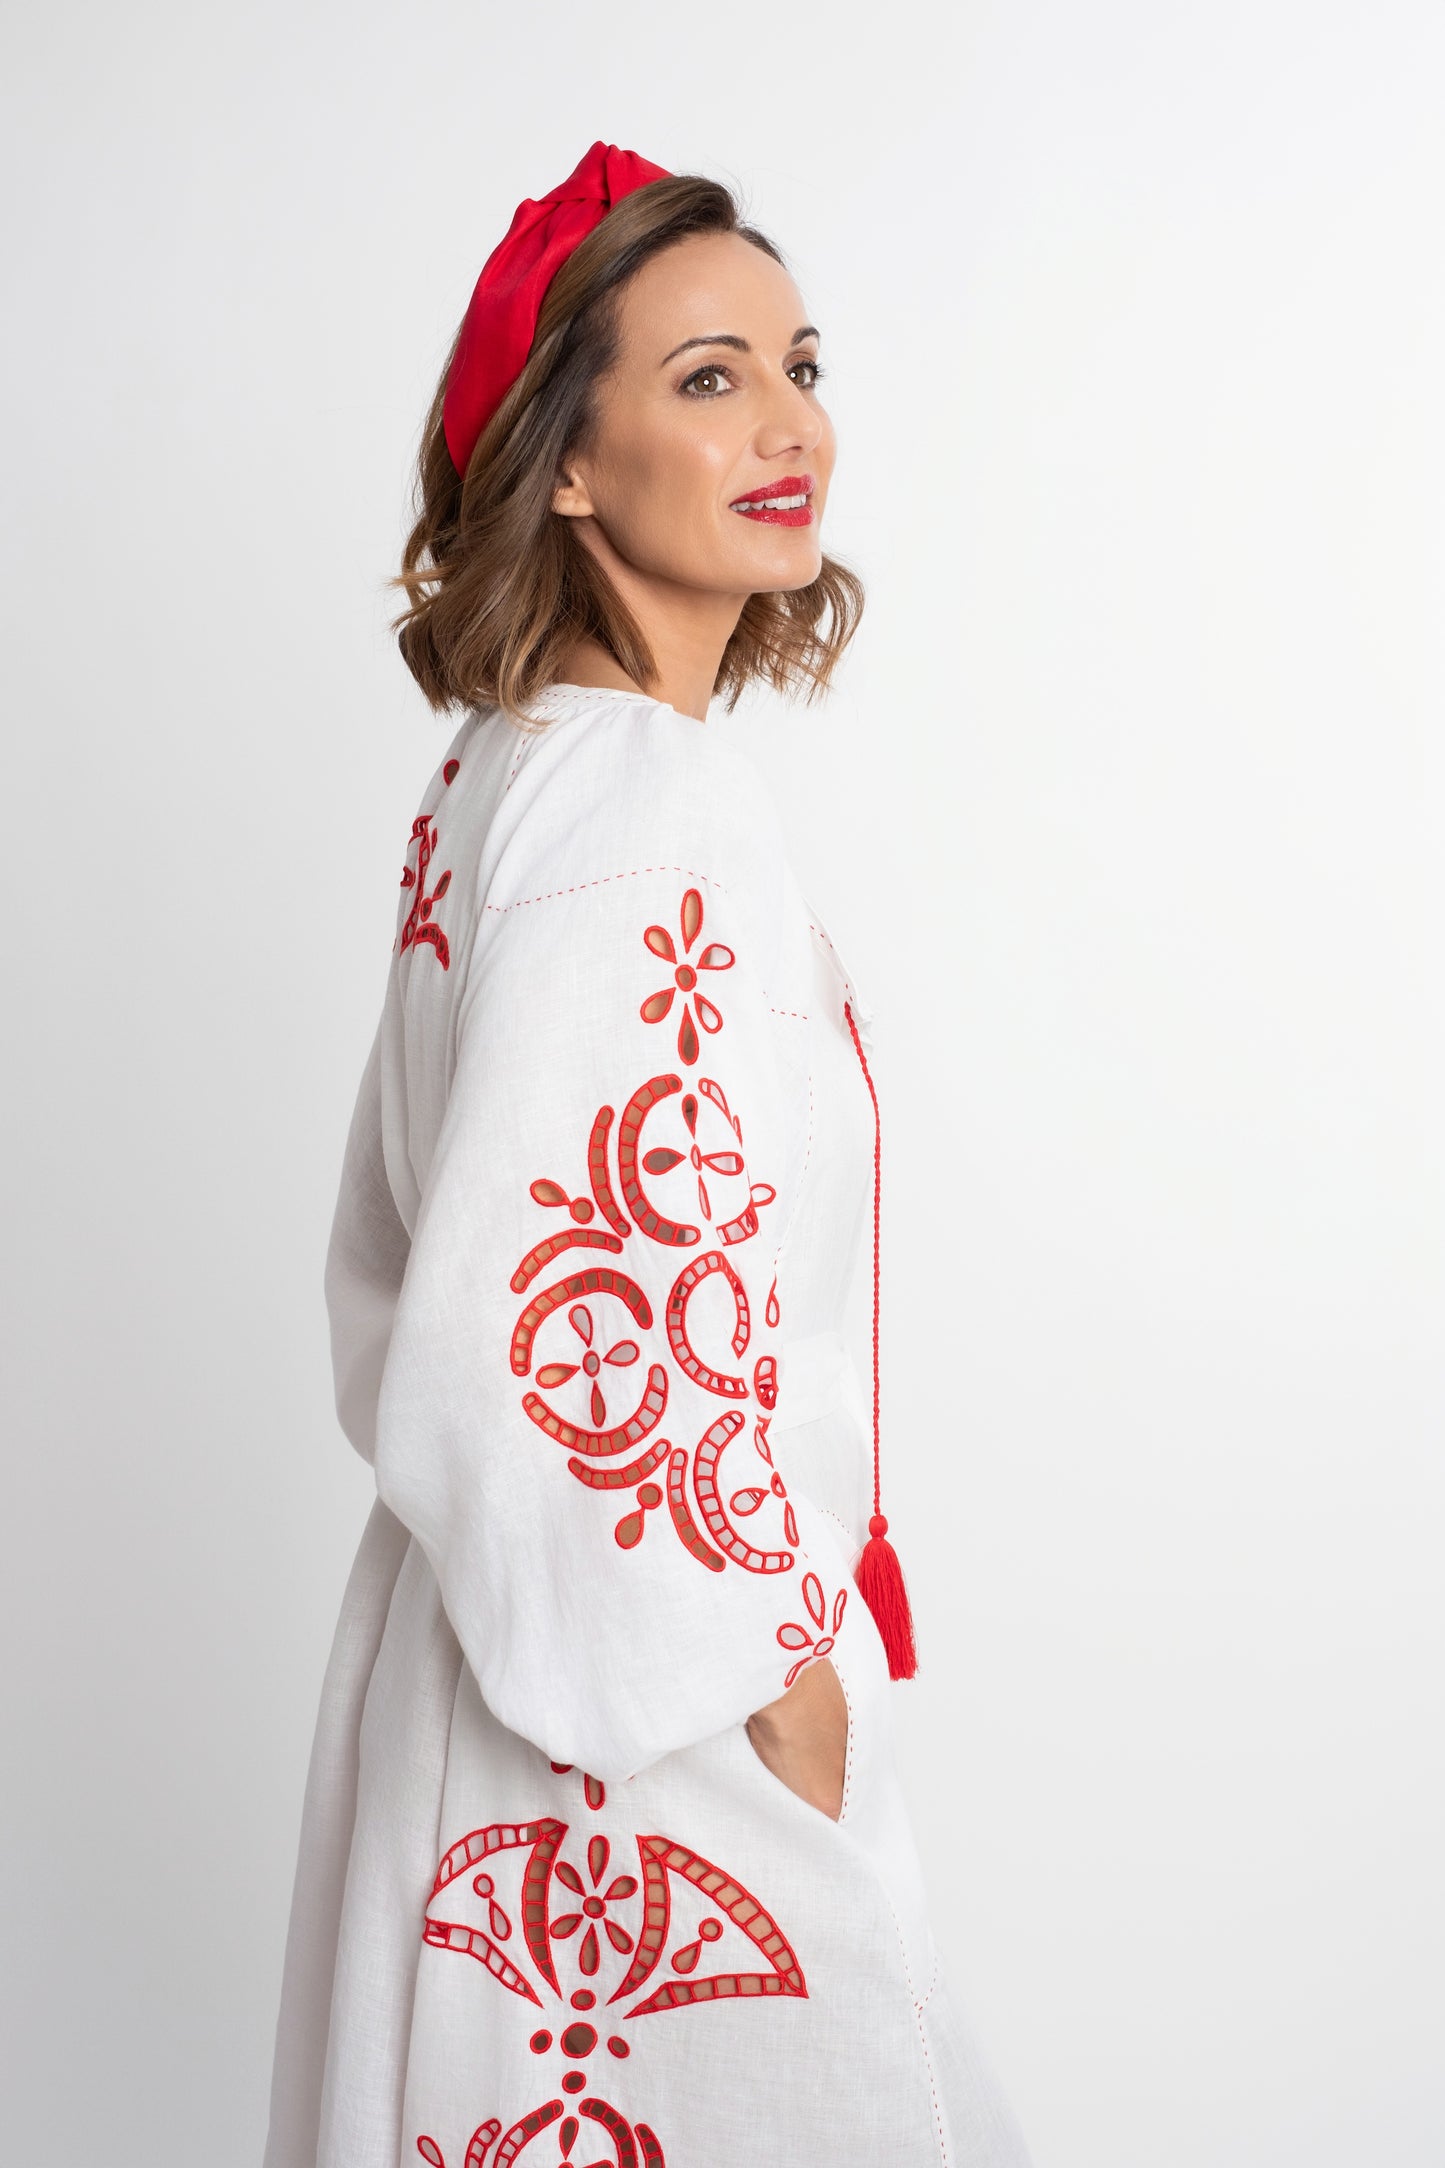 Santorini: Vestido de lino blanco con cinturón, bordado en rojo con pompones y botones de nácar.